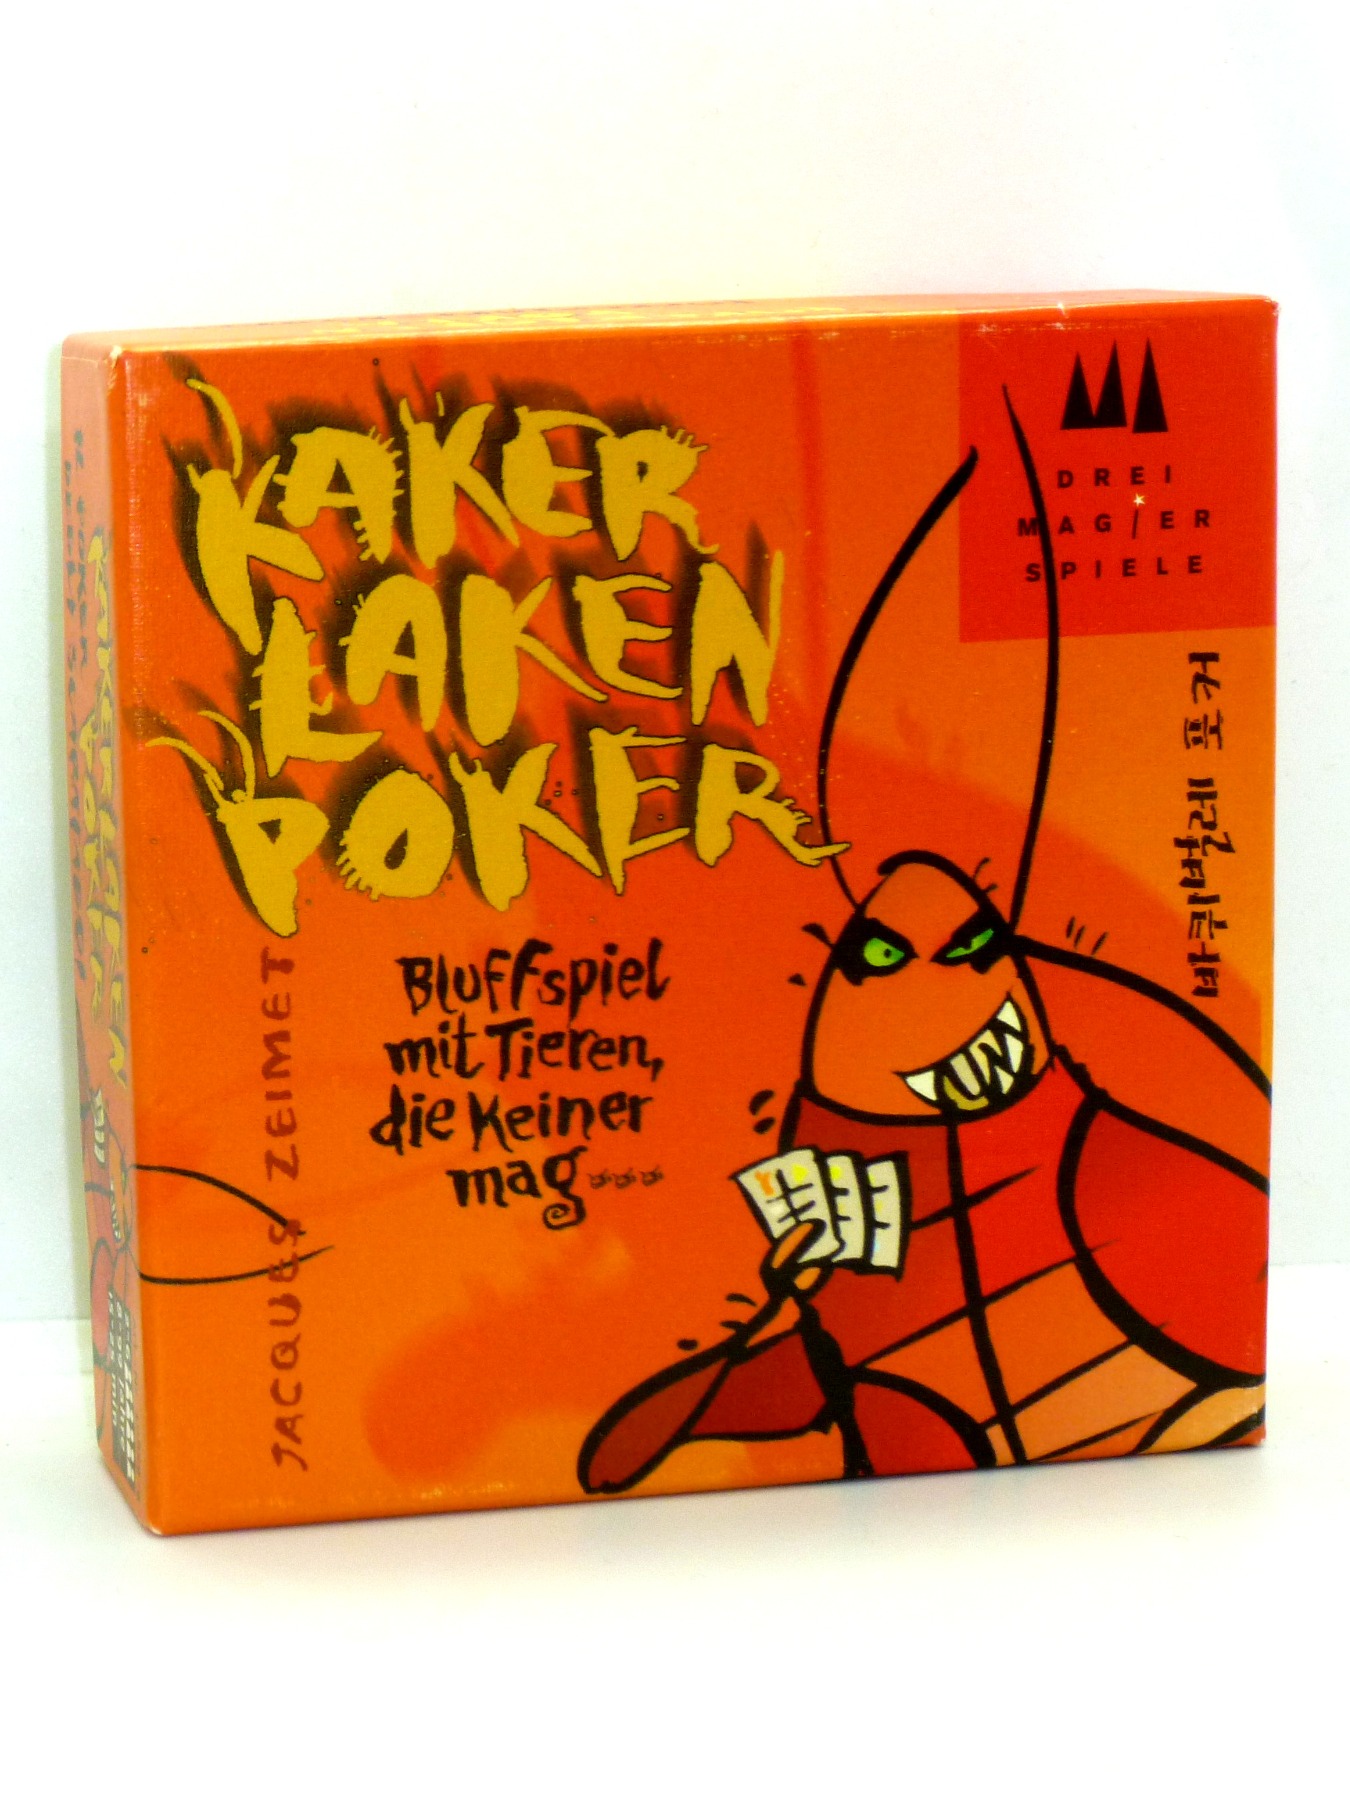 Kaker Laken Poker - Kartenspiel